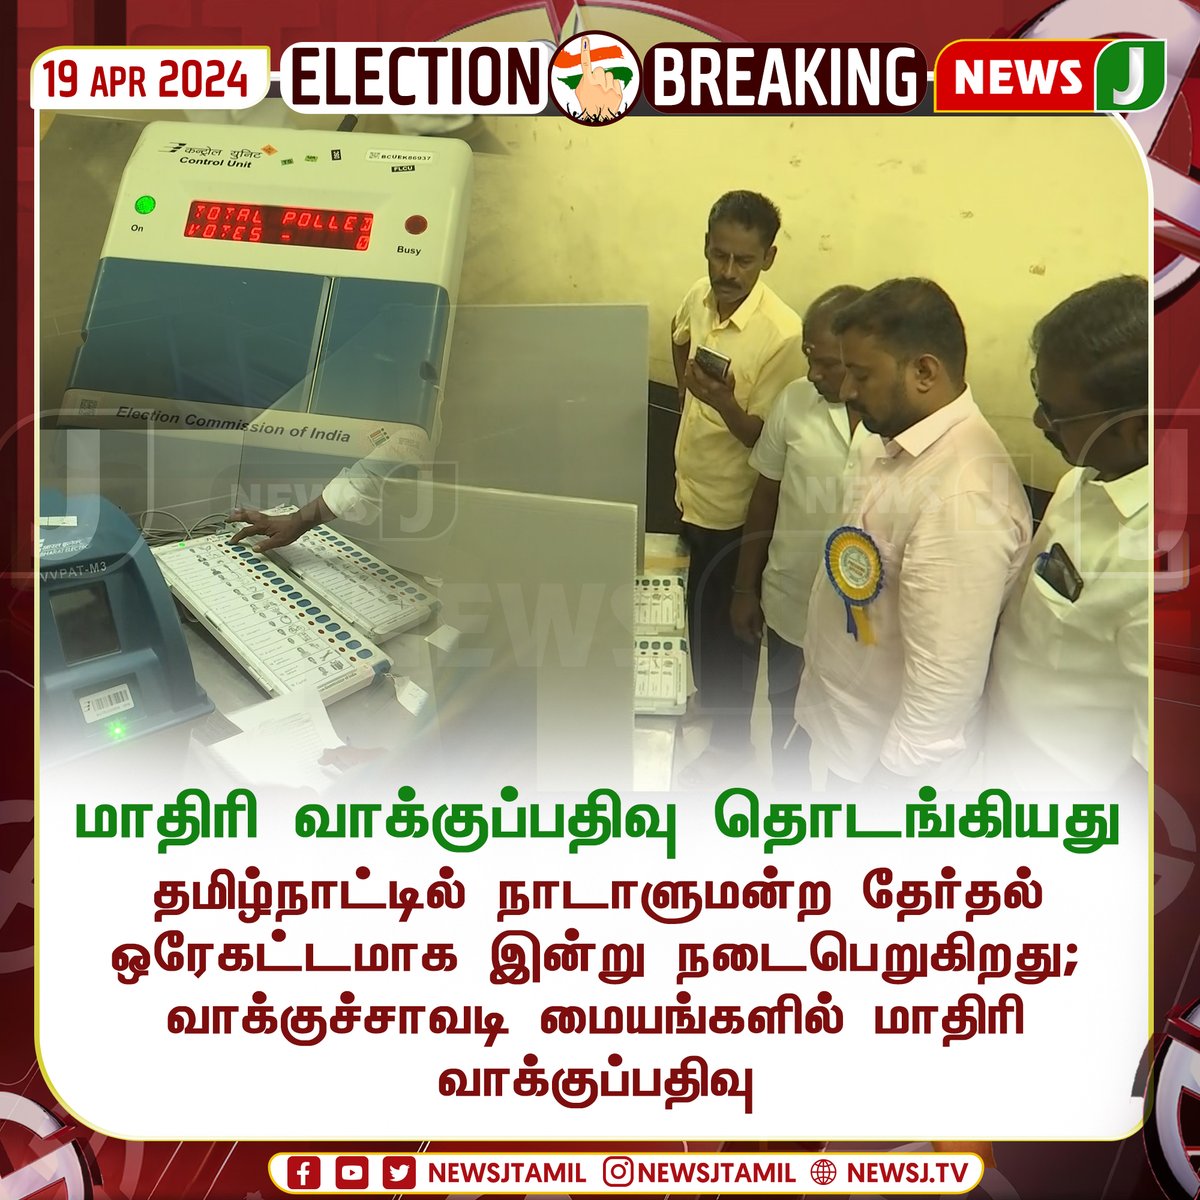 மாதிரி வாக்குப்பதிவு தொடங்கியது
#Tamilnadu #elections2024 #electionupdate #indiaelection2024 #election 
#ElectionsWithNewsJ | #LokSabhaElections2024 #NewsJ #NewsJTamil